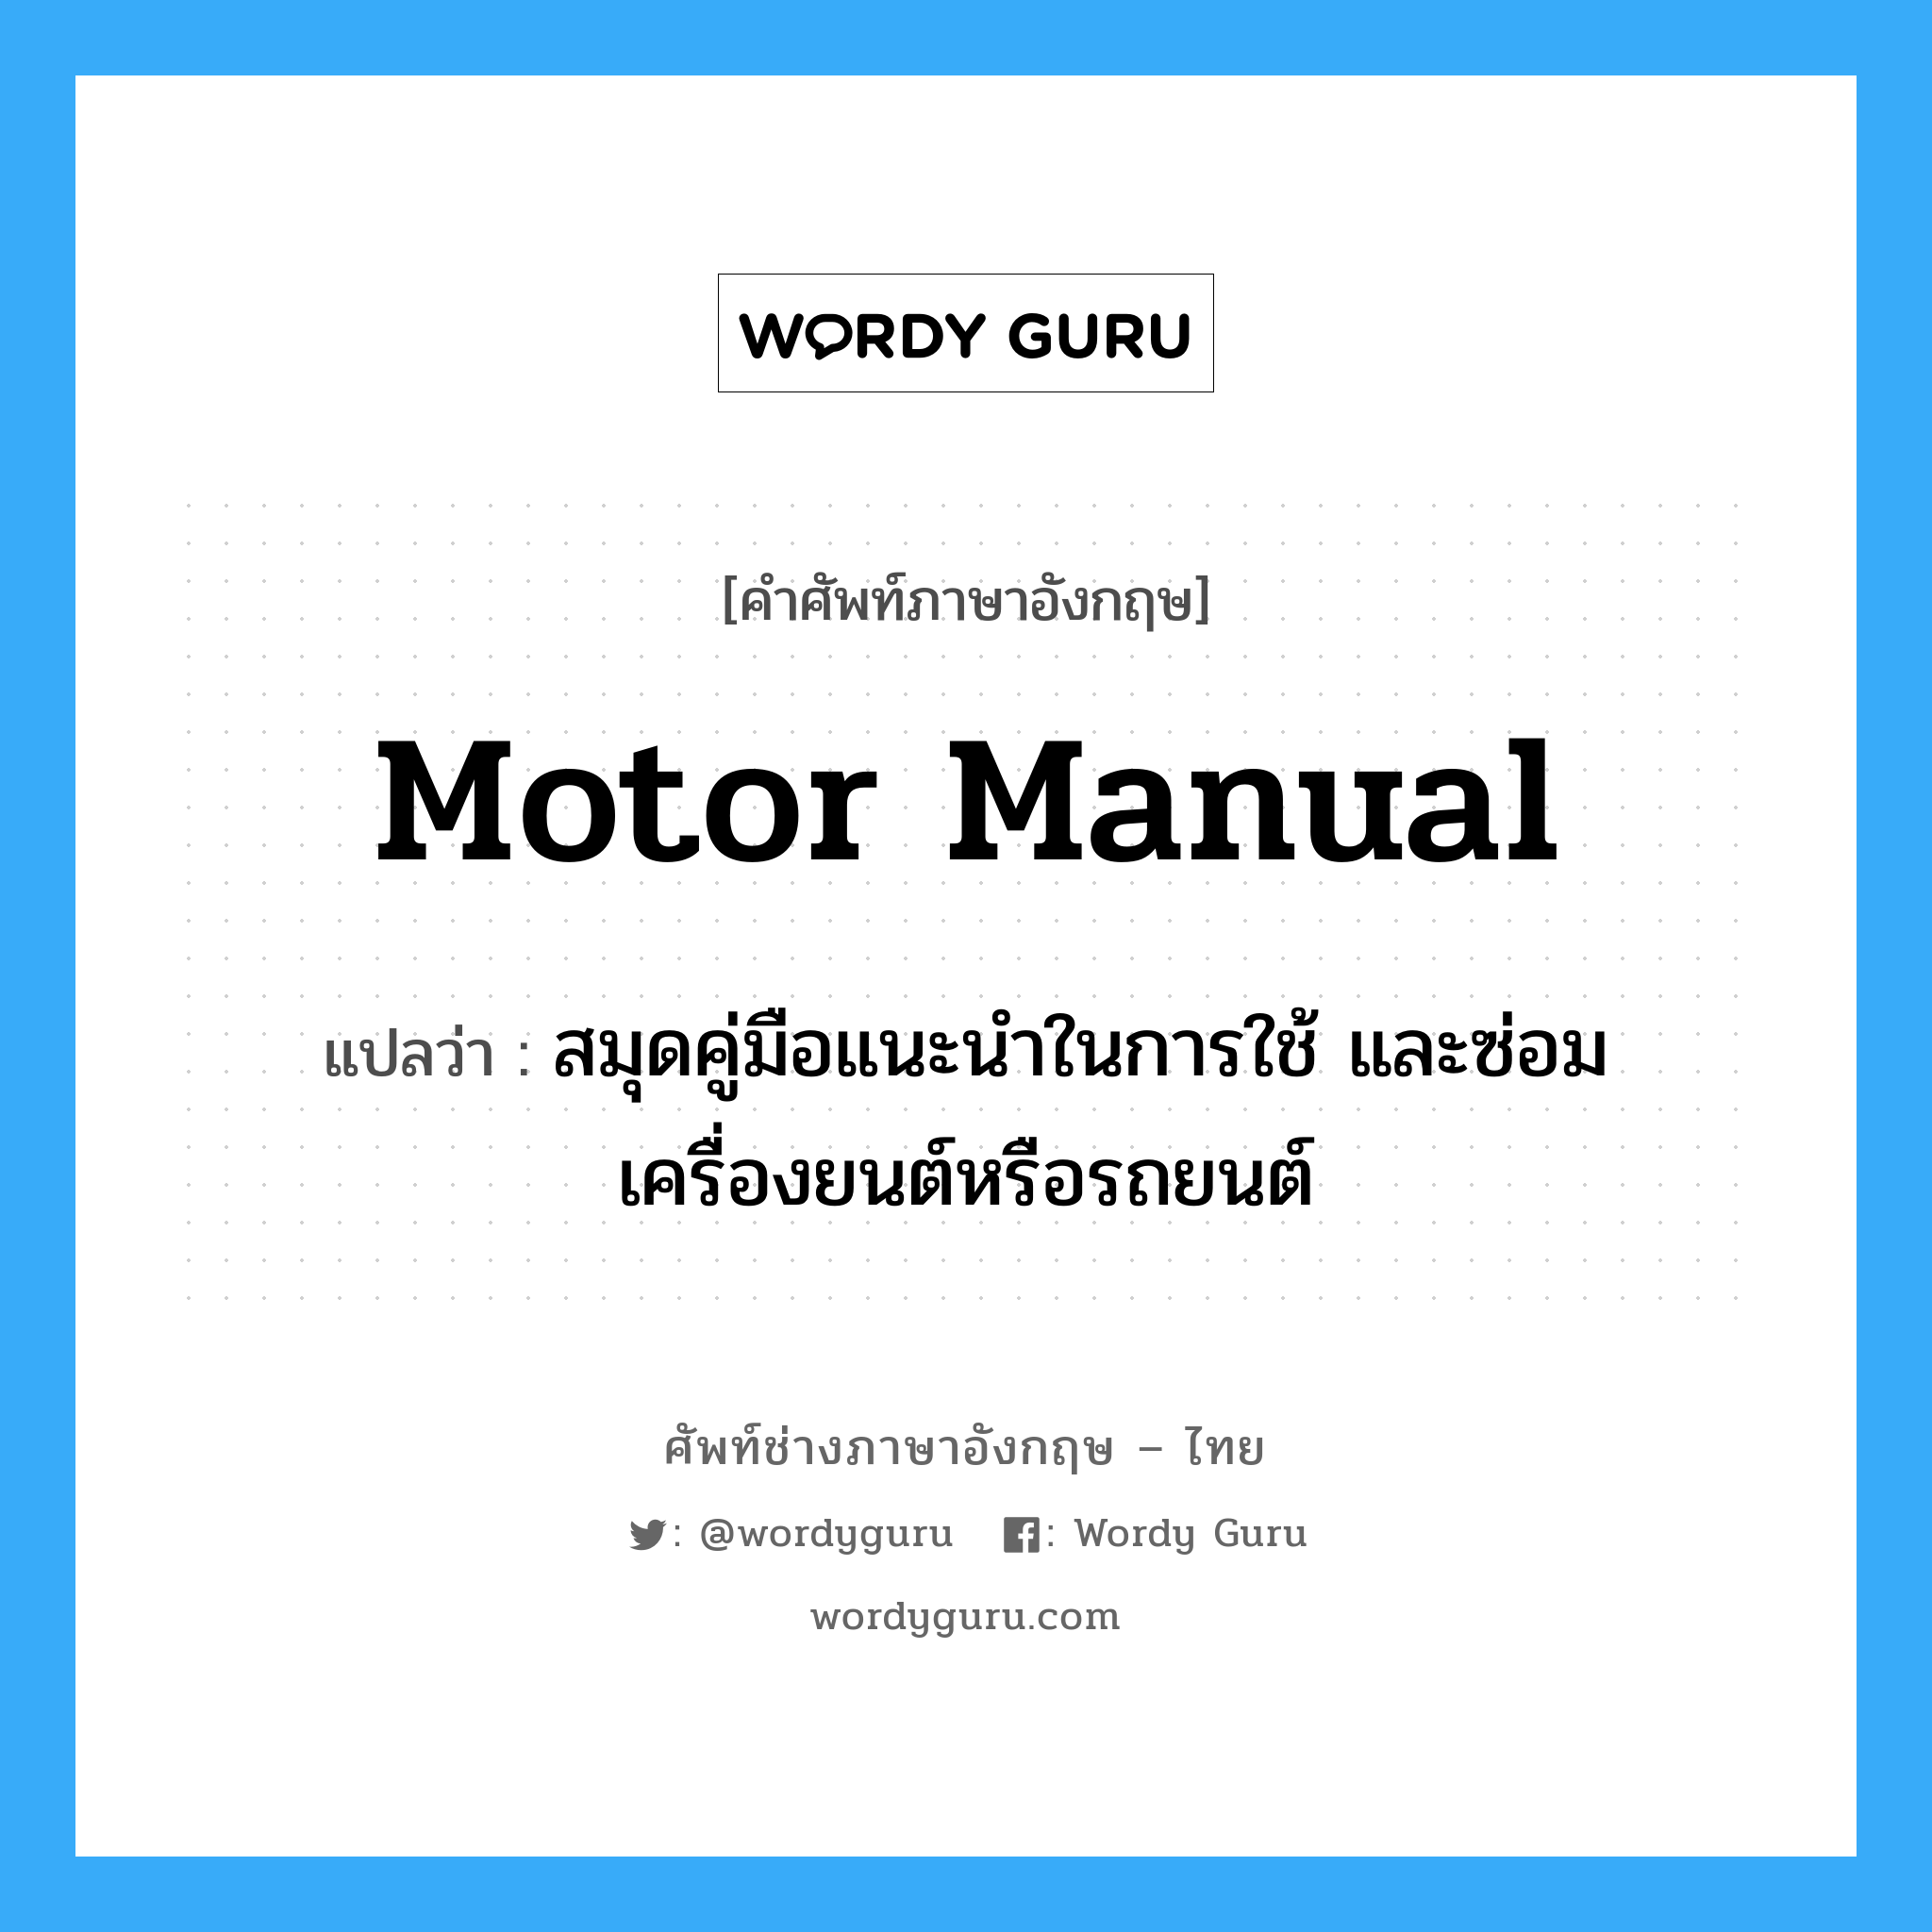 motor manual แปลว่า?, คำศัพท์ช่างภาษาอังกฤษ - ไทย motor manual คำศัพท์ภาษาอังกฤษ motor manual แปลว่า สมุดคู่มือแนะนำในการใช้ และซ่อมเครื่องยนต์หรือรถยนต์